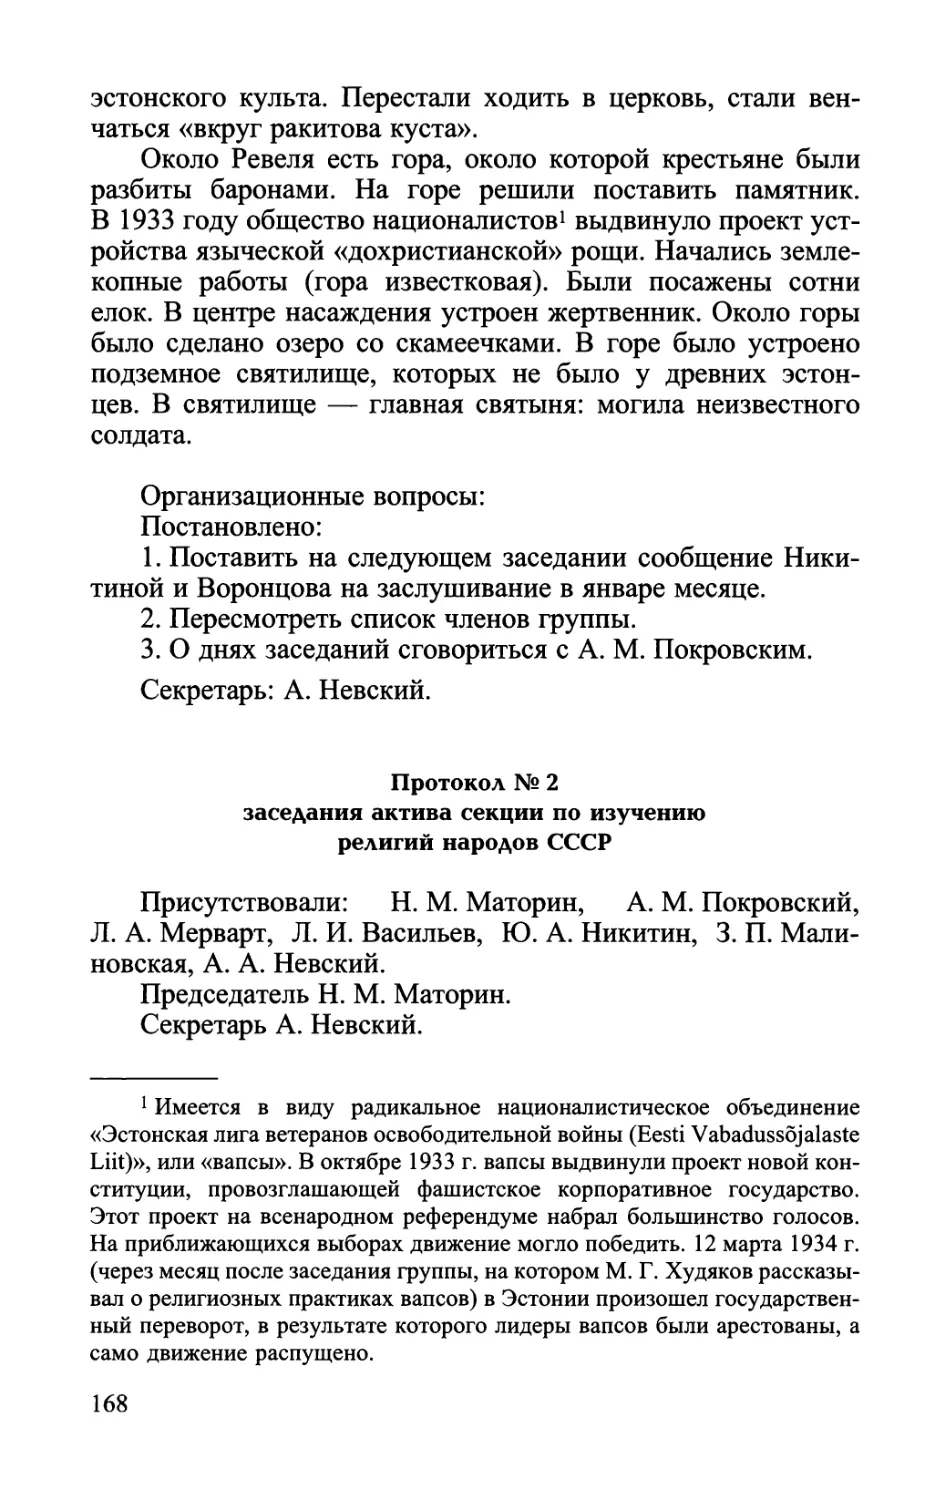 Протокол № 2 заседания актива секции по изучению религий народов СССР